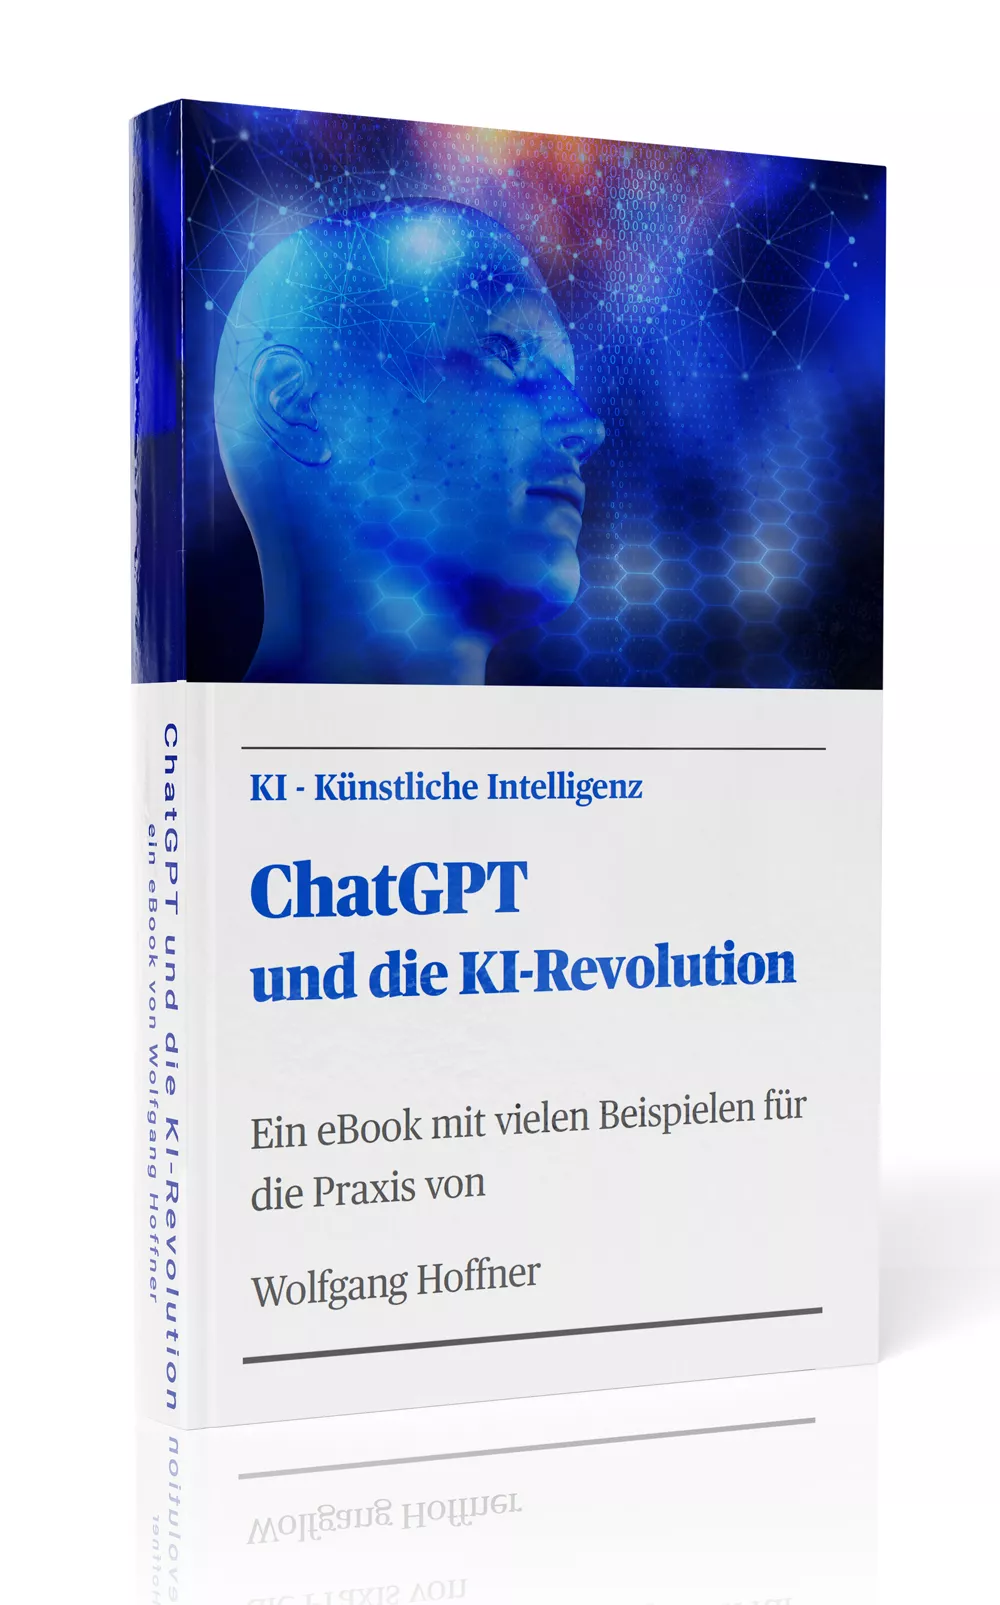 ChatGPT und die KI-Revolution, ein eBook mit vielen Beispielen für die Praxis